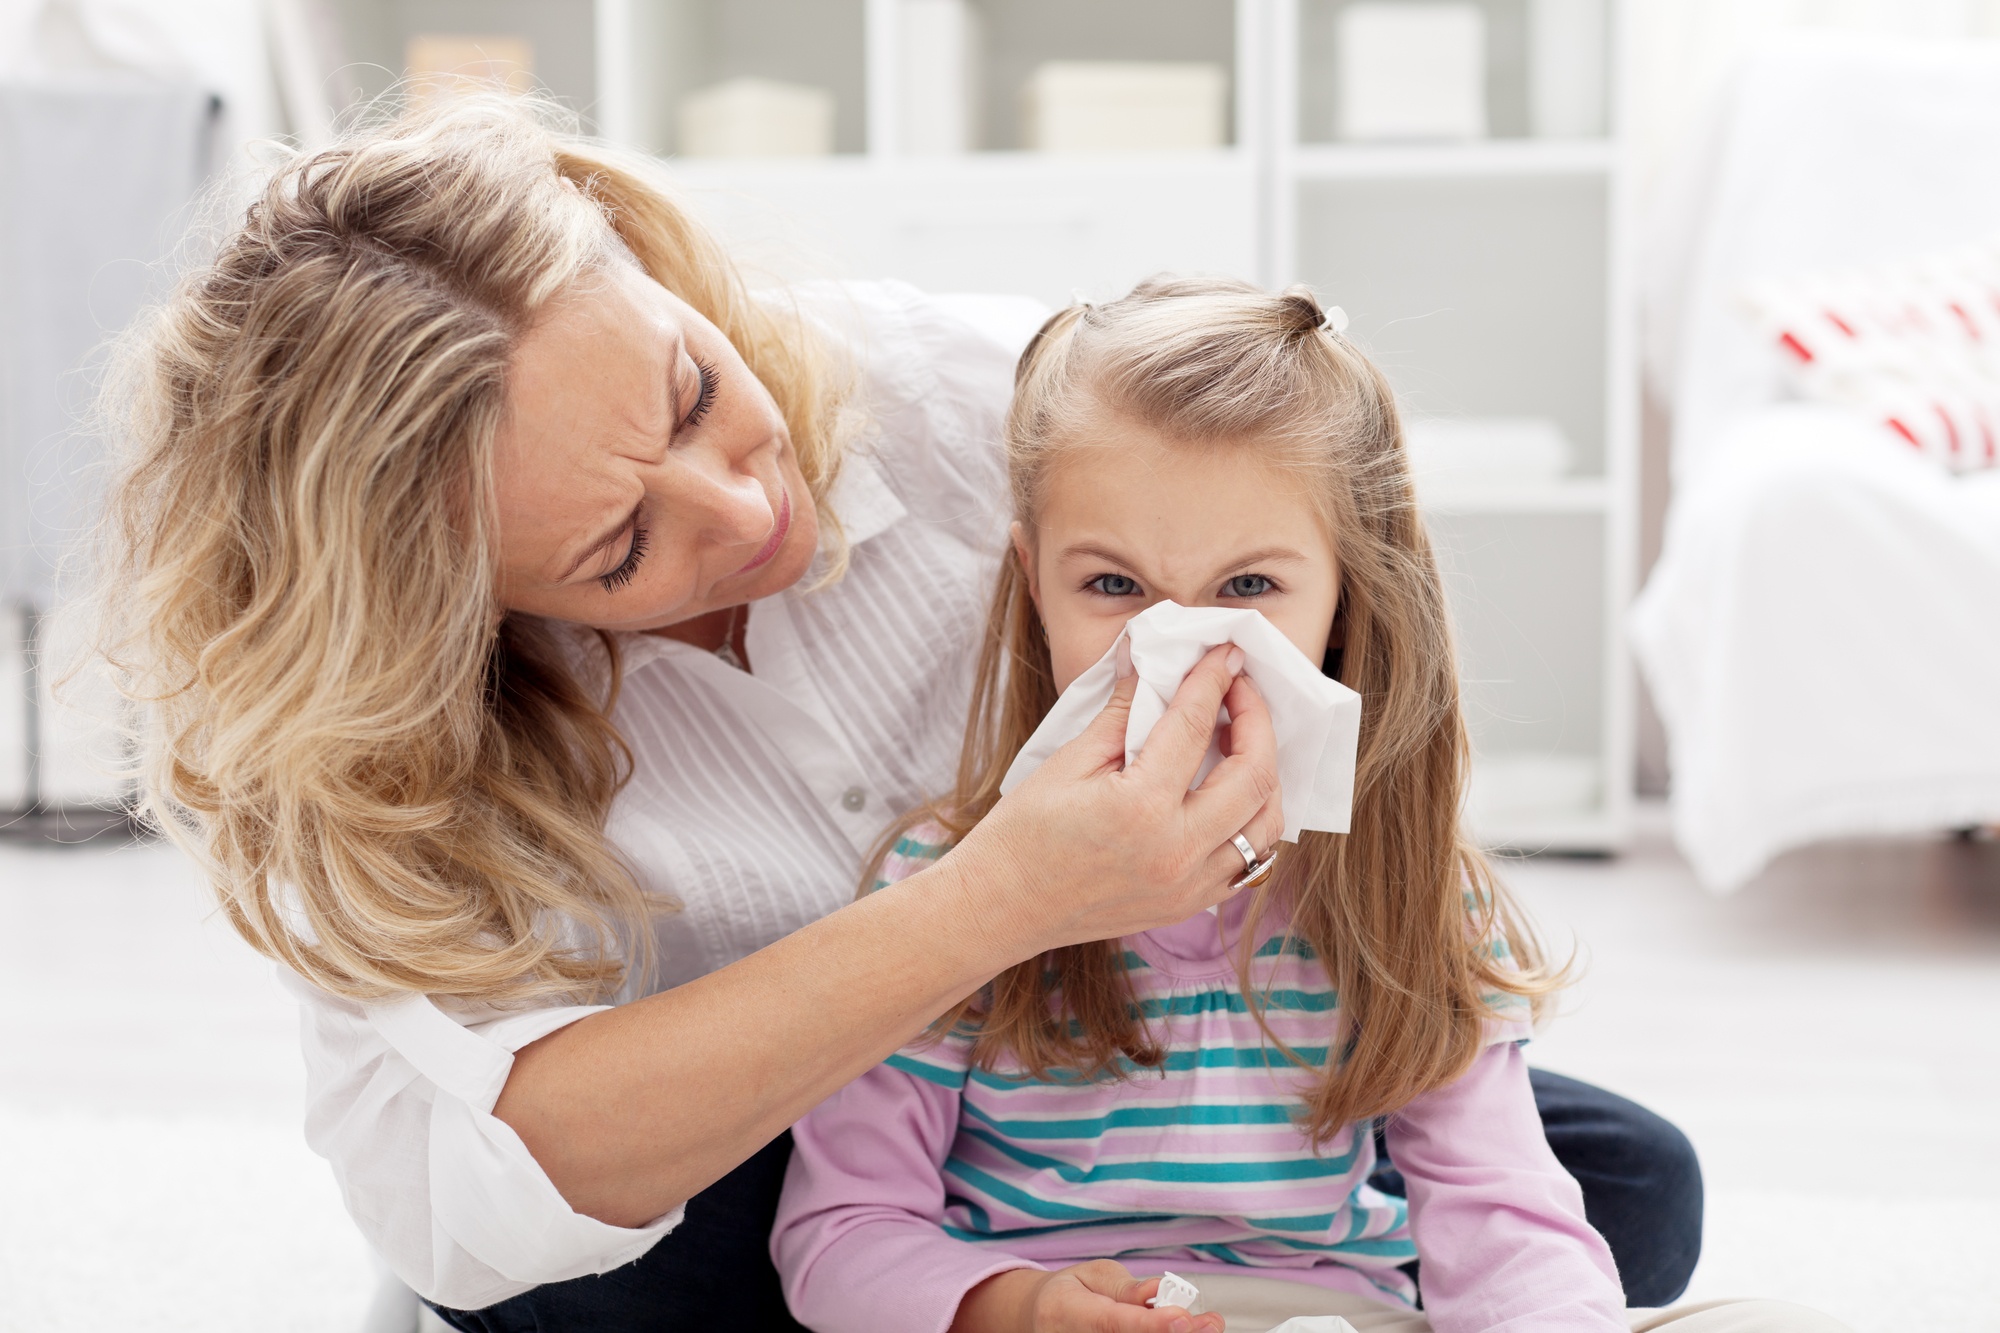 Факты о простуде и гриппе детей, о которых нужно знать родителям